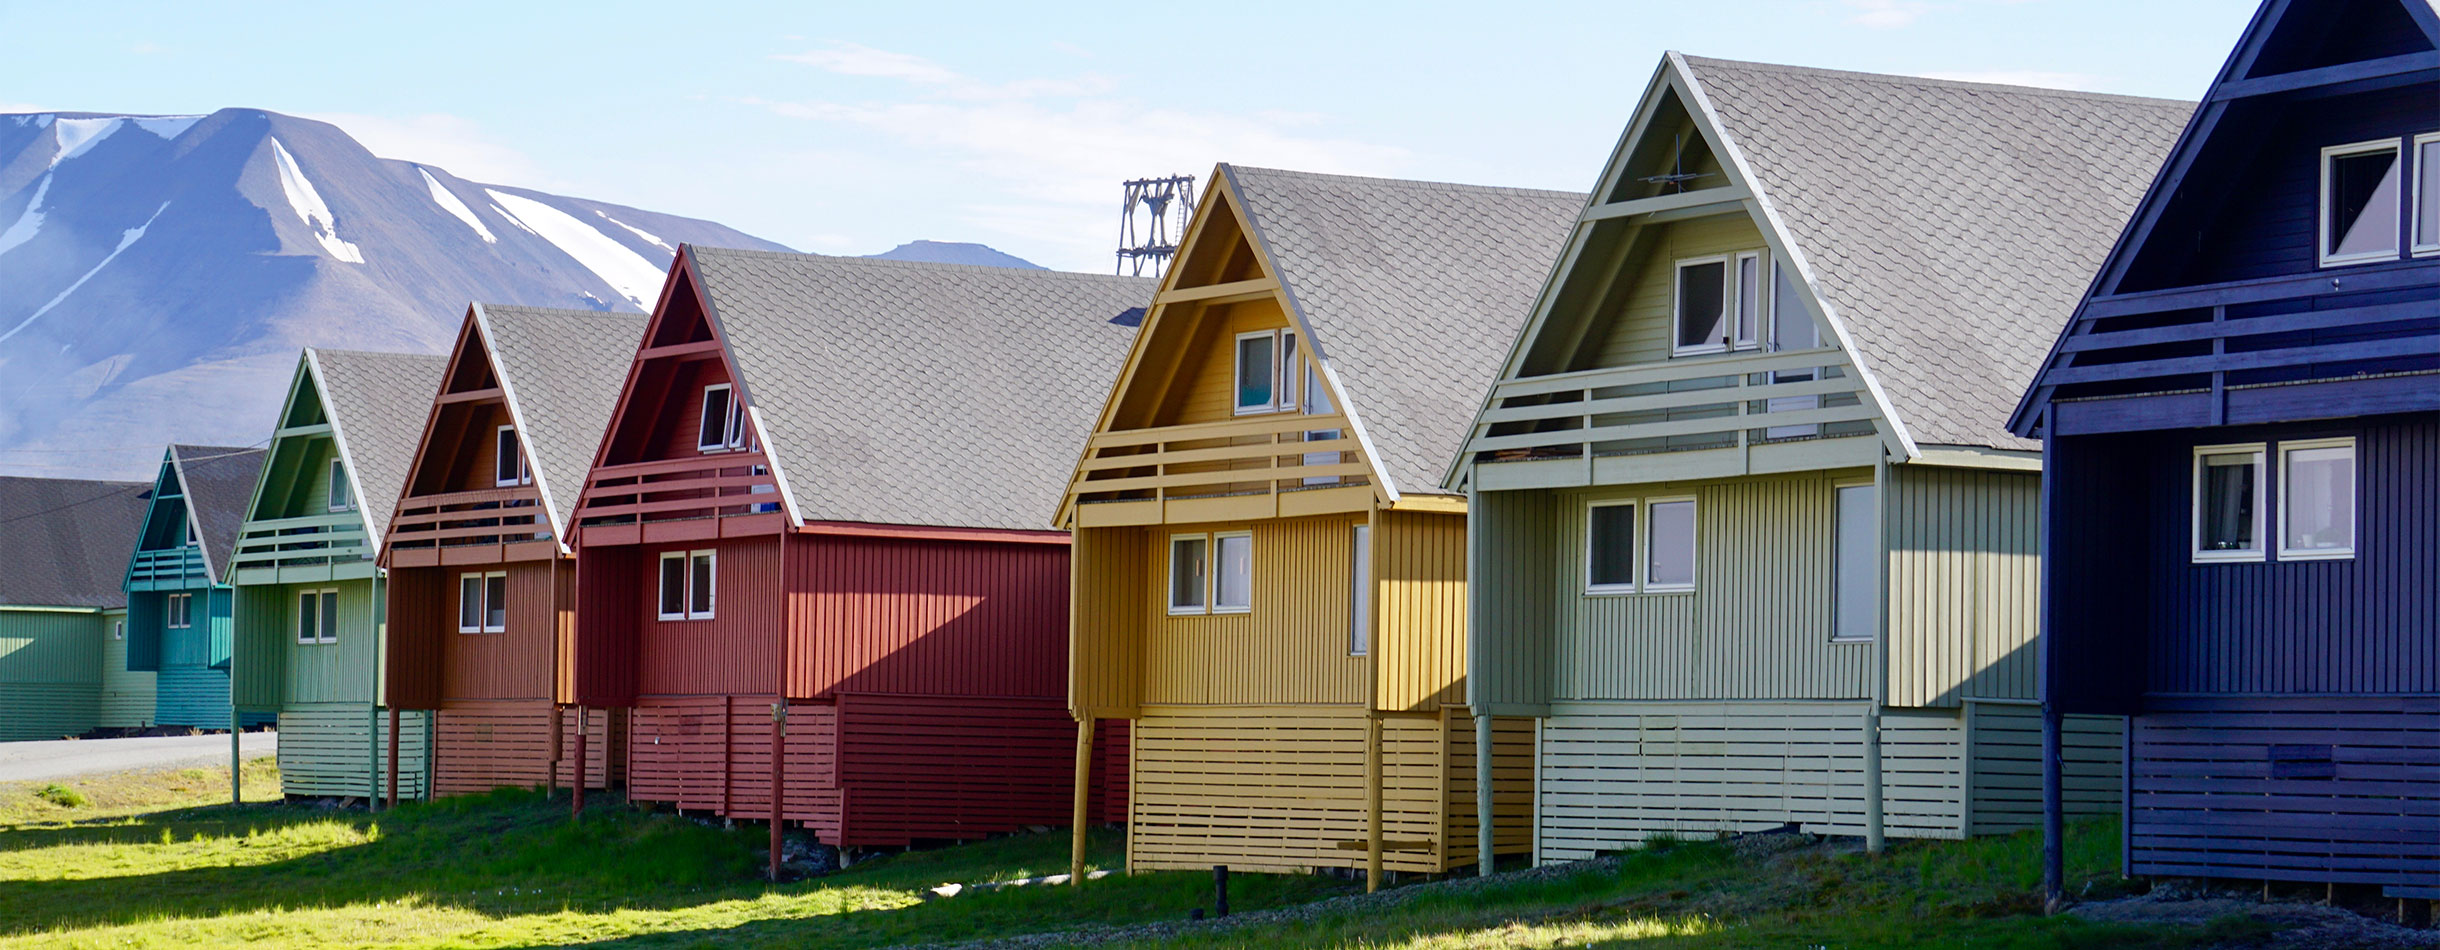 Colourful houses in Longyearbyen, Spitsbergen